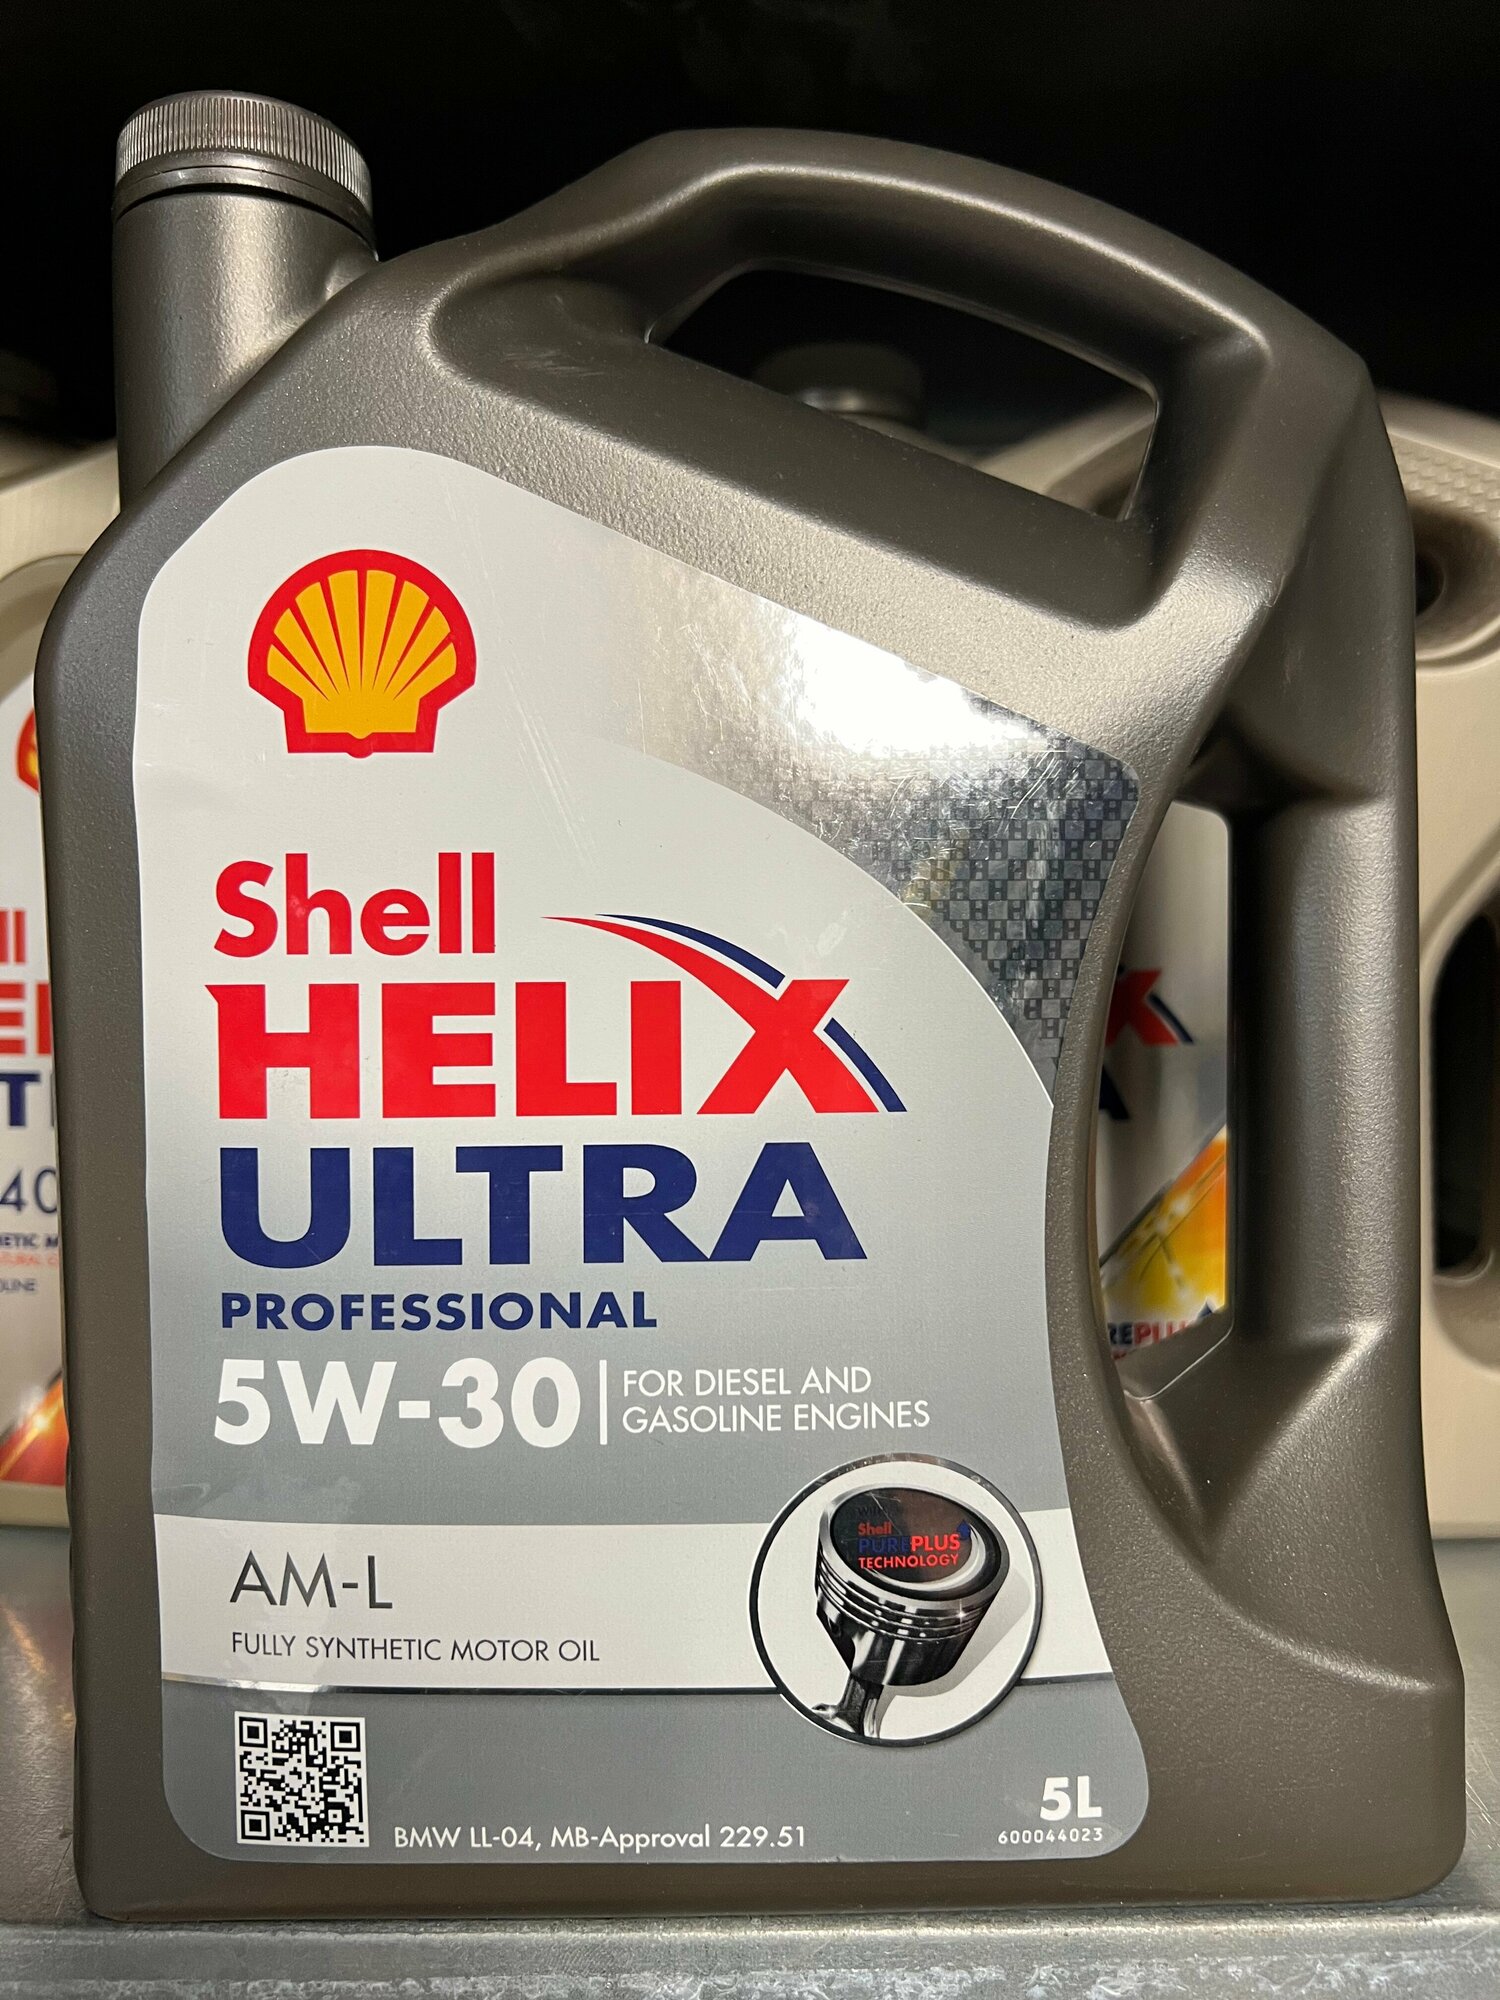 Shell Масло Моторное Shell Helix Ultra Professional Am-L 5W-30 Синтетическое 5 Л 550046682